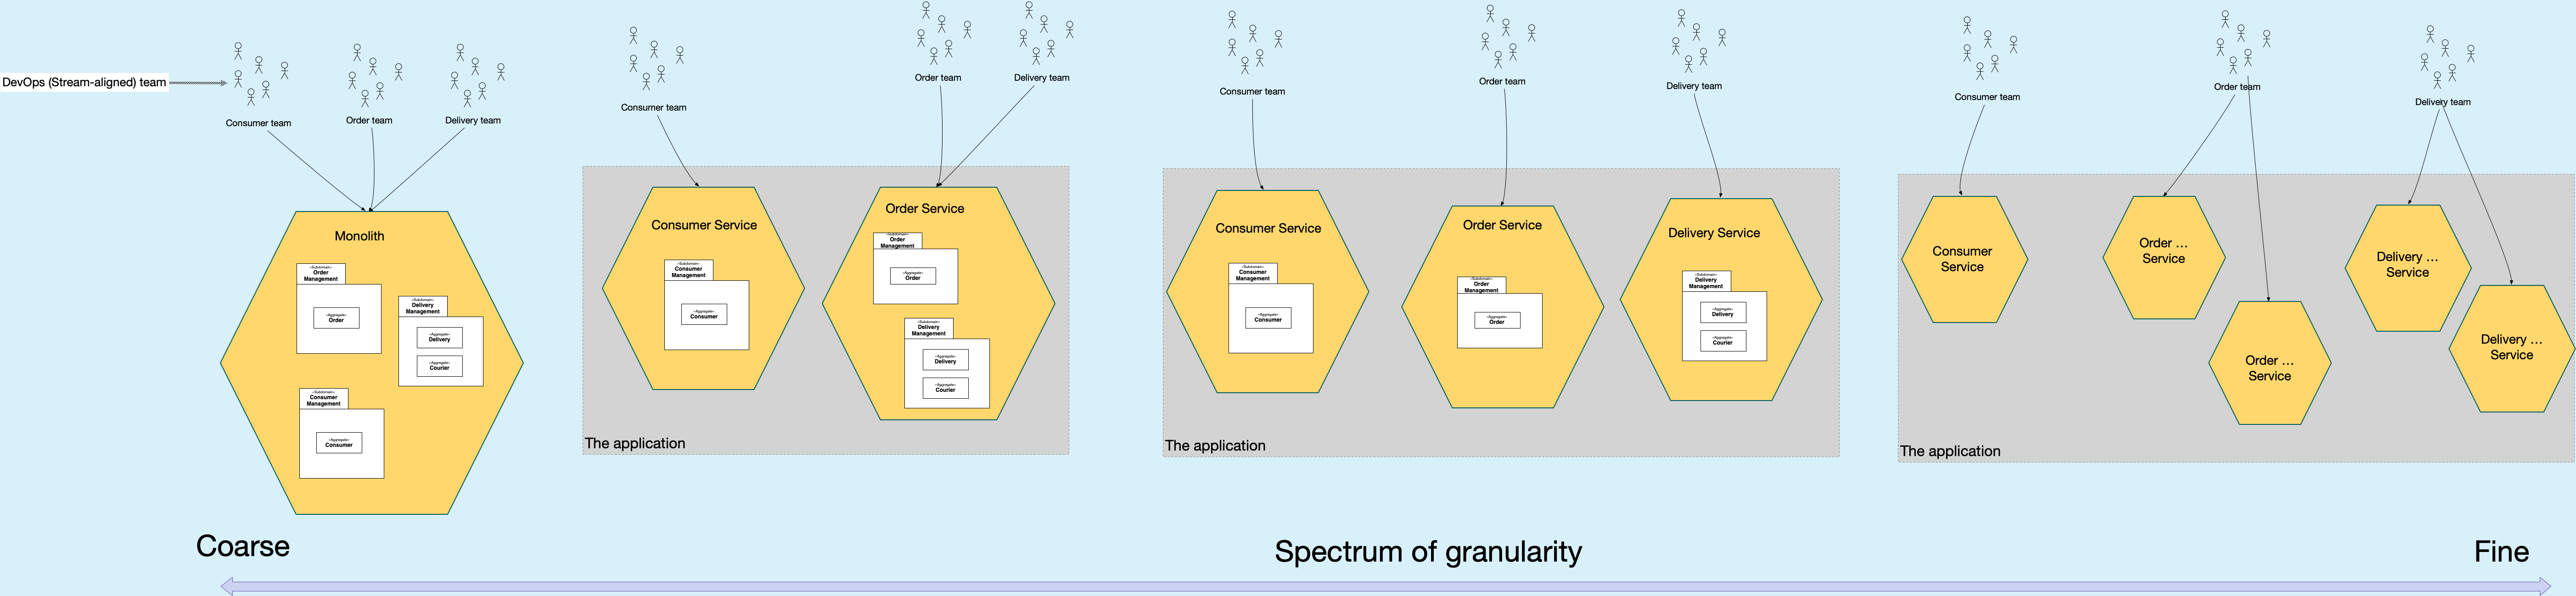 Spectrum of granularity